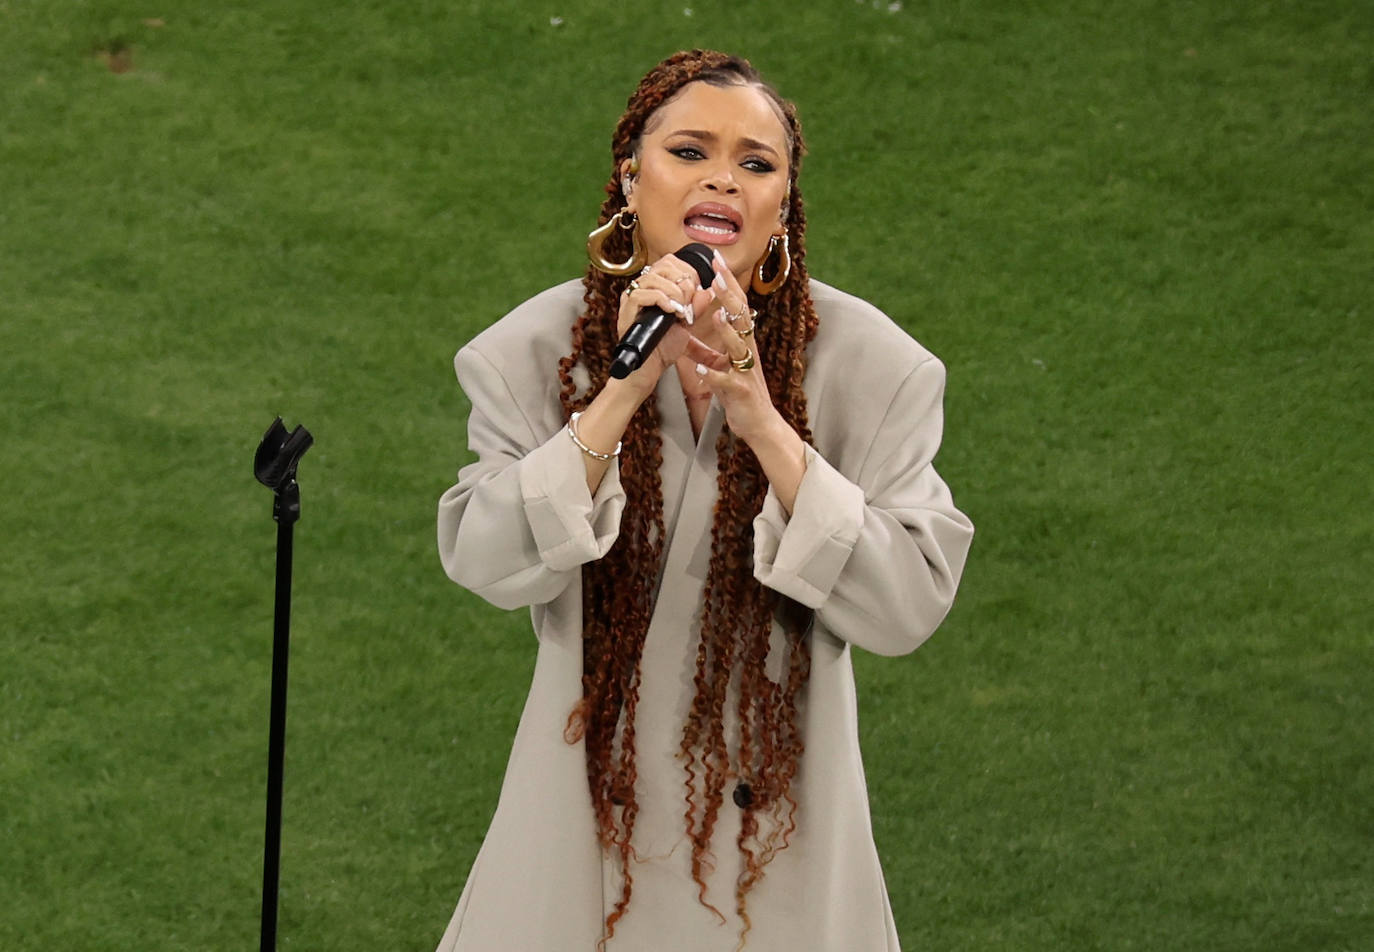 La cantante Andra Day entonó la letra de 'Lift Every Voice and Sing' antes del inicio del partido.